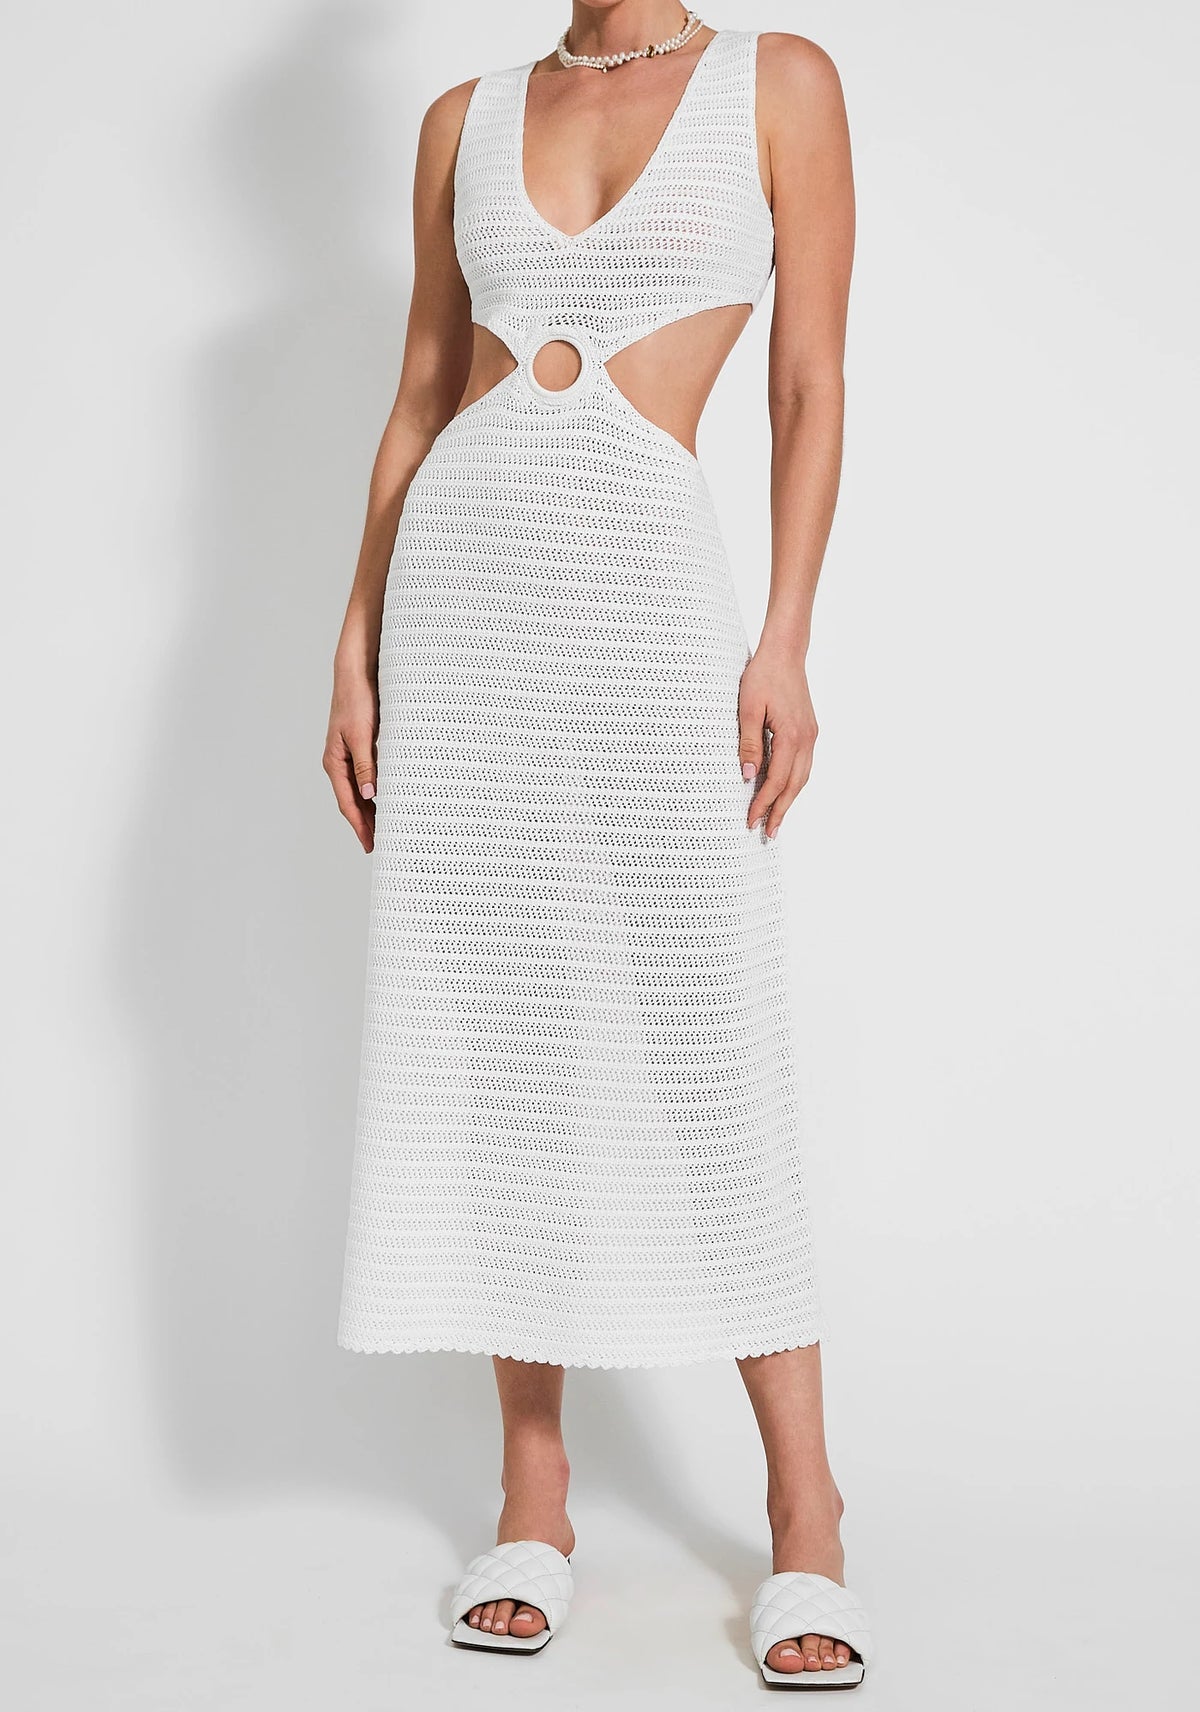 Devon Windsor Sonya Crochet Cutout Dress in Off White